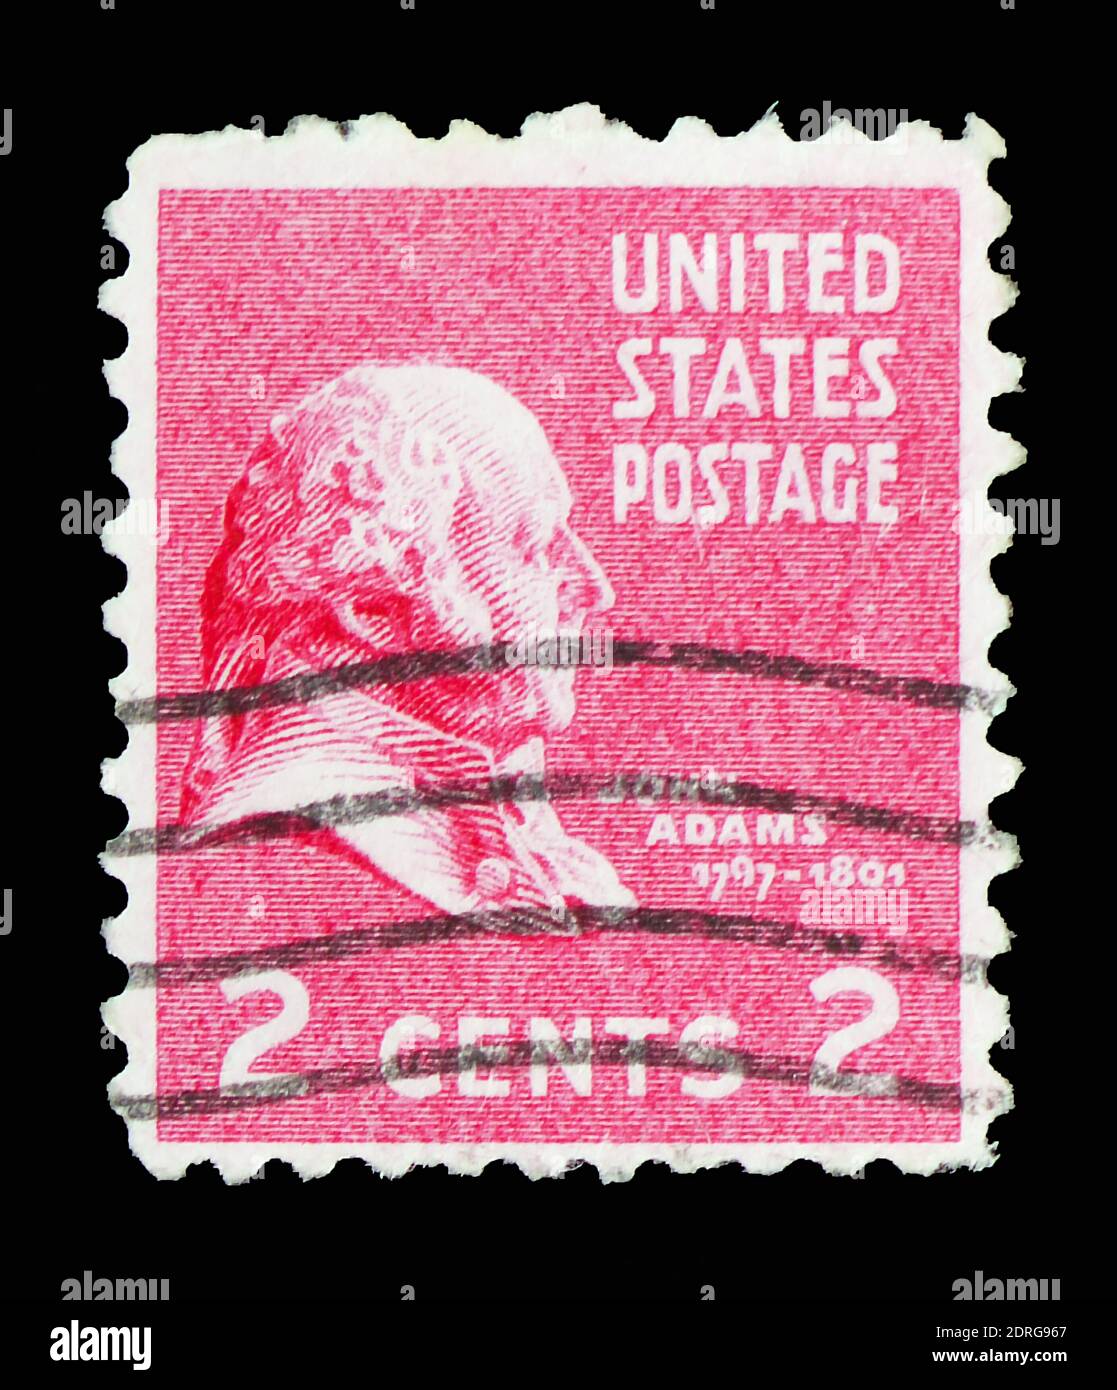 MOSCA, RUSSIA - 10 FEBBRAIO 2019: Un francobollo stampato negli Stati Uniti mostra John Adams (1735-1826), secondo presidente degli Stati Uniti, numero presidenziale Foto Stock